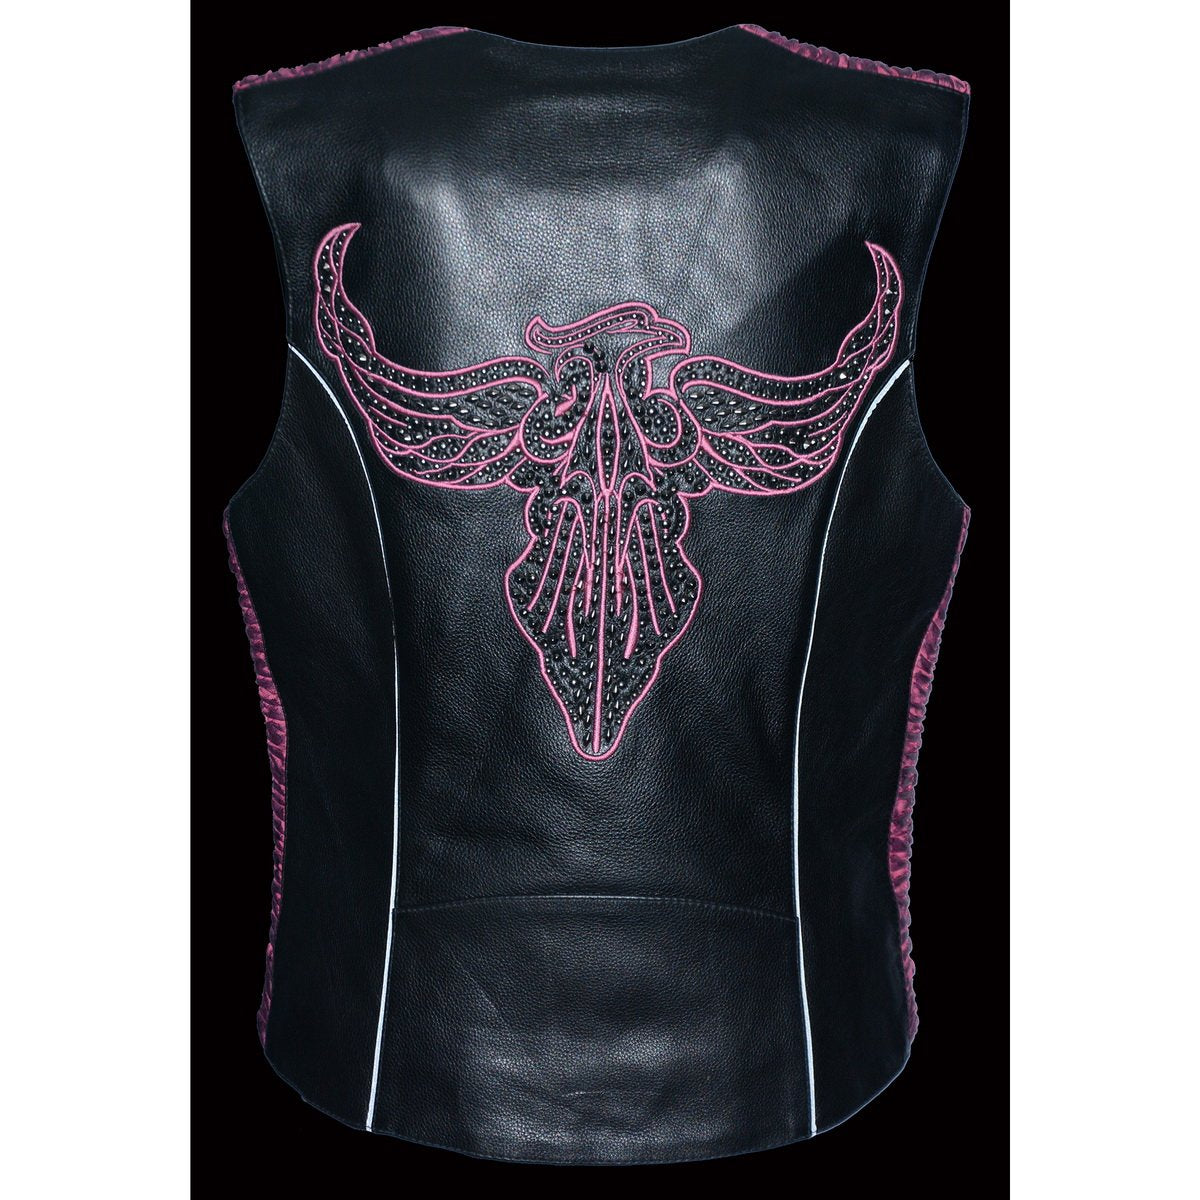 Milwaukee Leather MLL4570 Ladies 'Studded Phoenix' Black and Fuchsia Leather Vest - Milwaukee Leather Womens Leather Vests